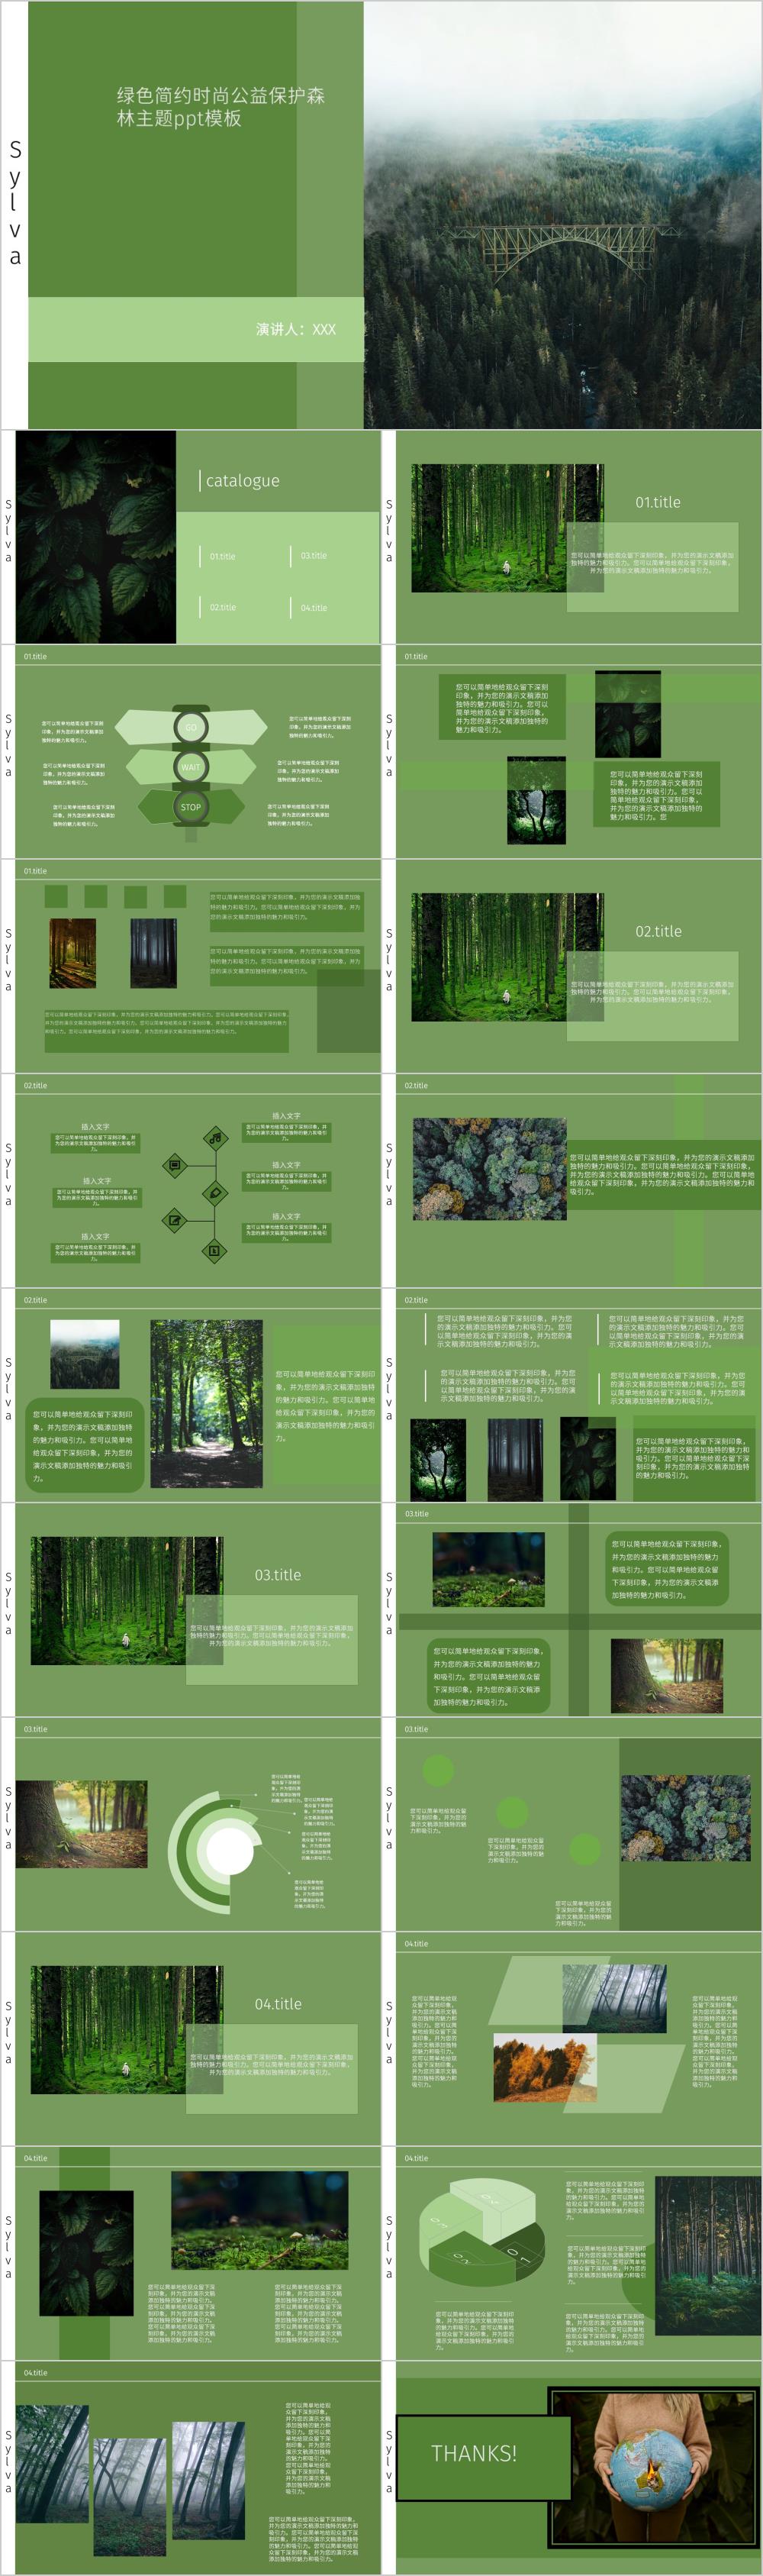 绿色简约时尚公益保护森林主题ppt模板